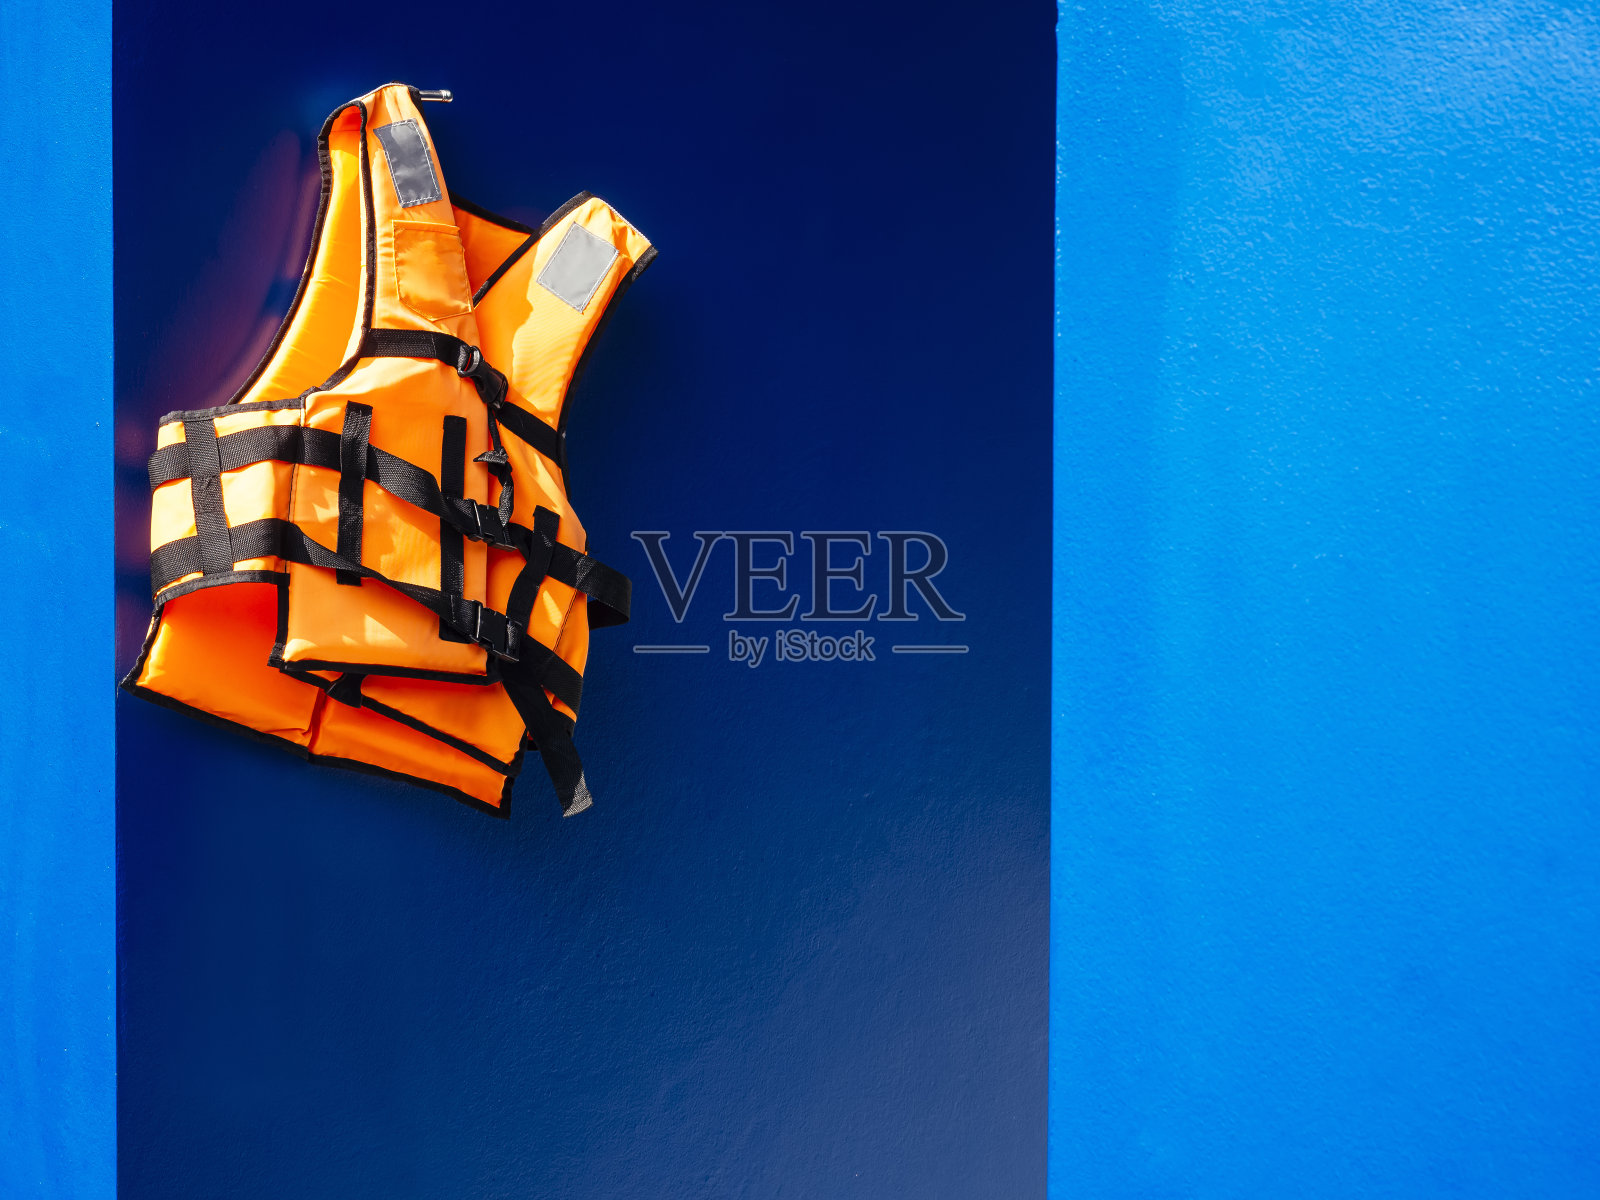 救生衣在蓝色墙壁背景游泳池安全设备照片摄影图片